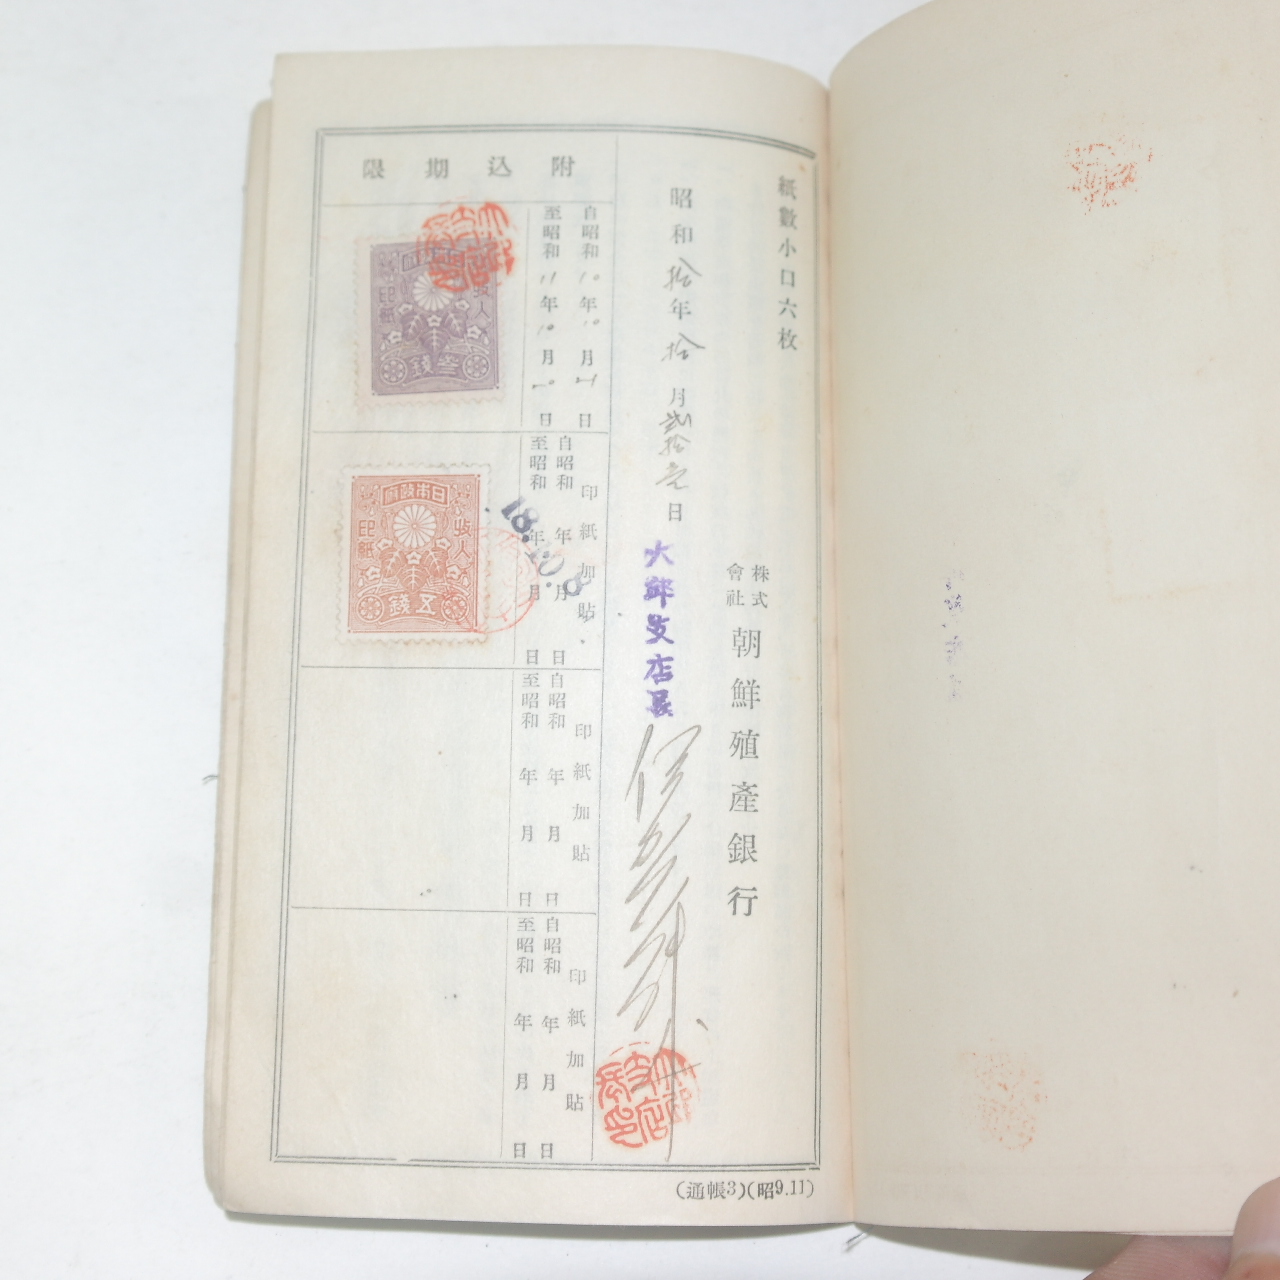 1935년 조선식산은행(朝鮮殖産銀行) 특별당좌예금통장